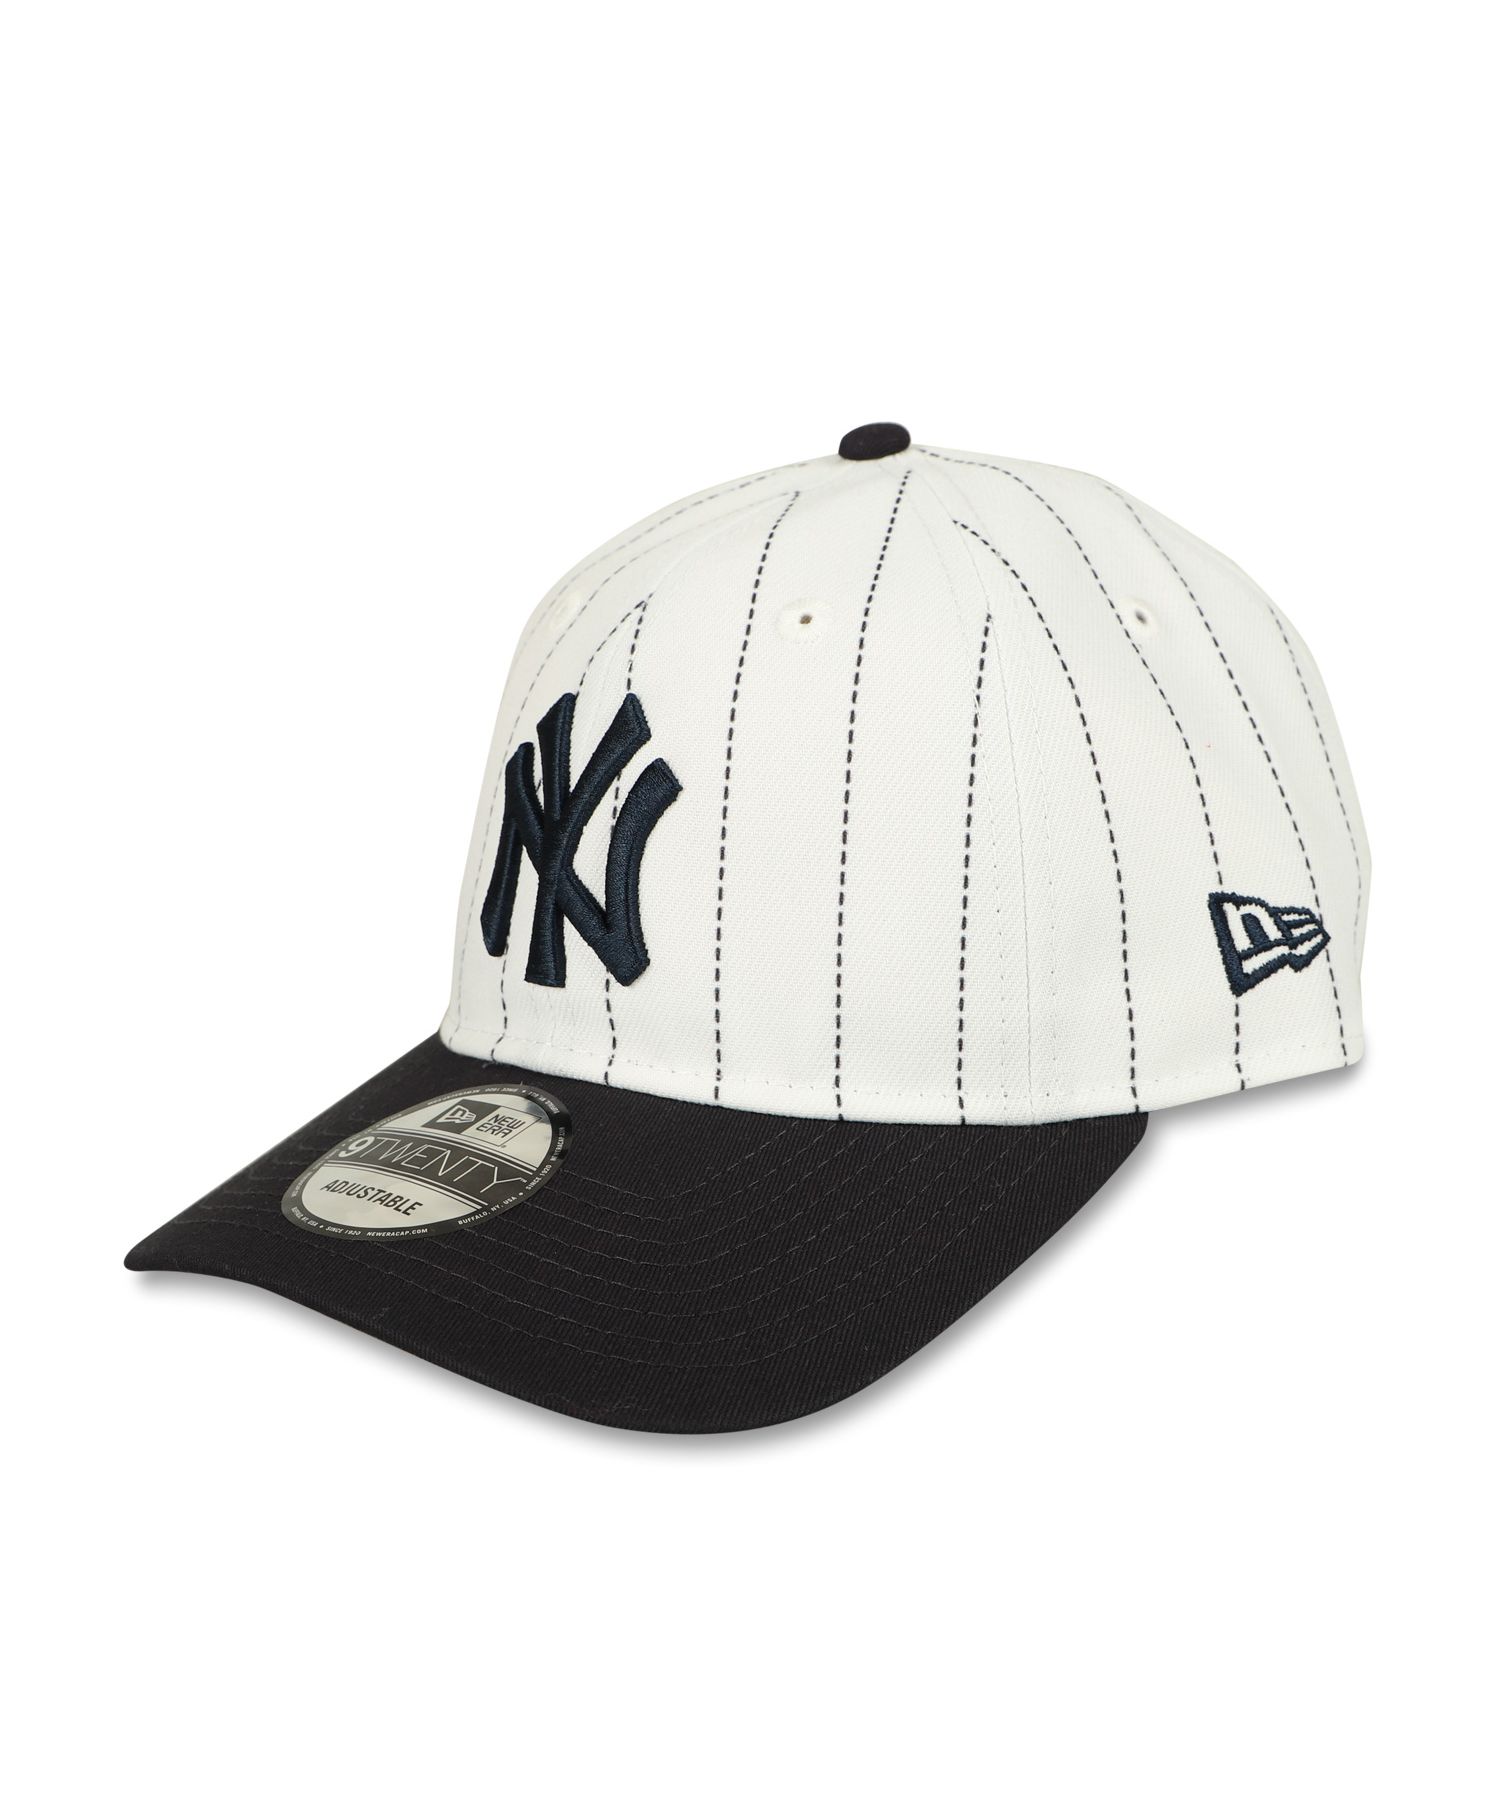 ニューエラ NEW ERA MoMA キャップ 帽子 ニューヨークヤンキース ピンストライプ メンズ レディース コラボキャップ NEW YORK  YANKEE